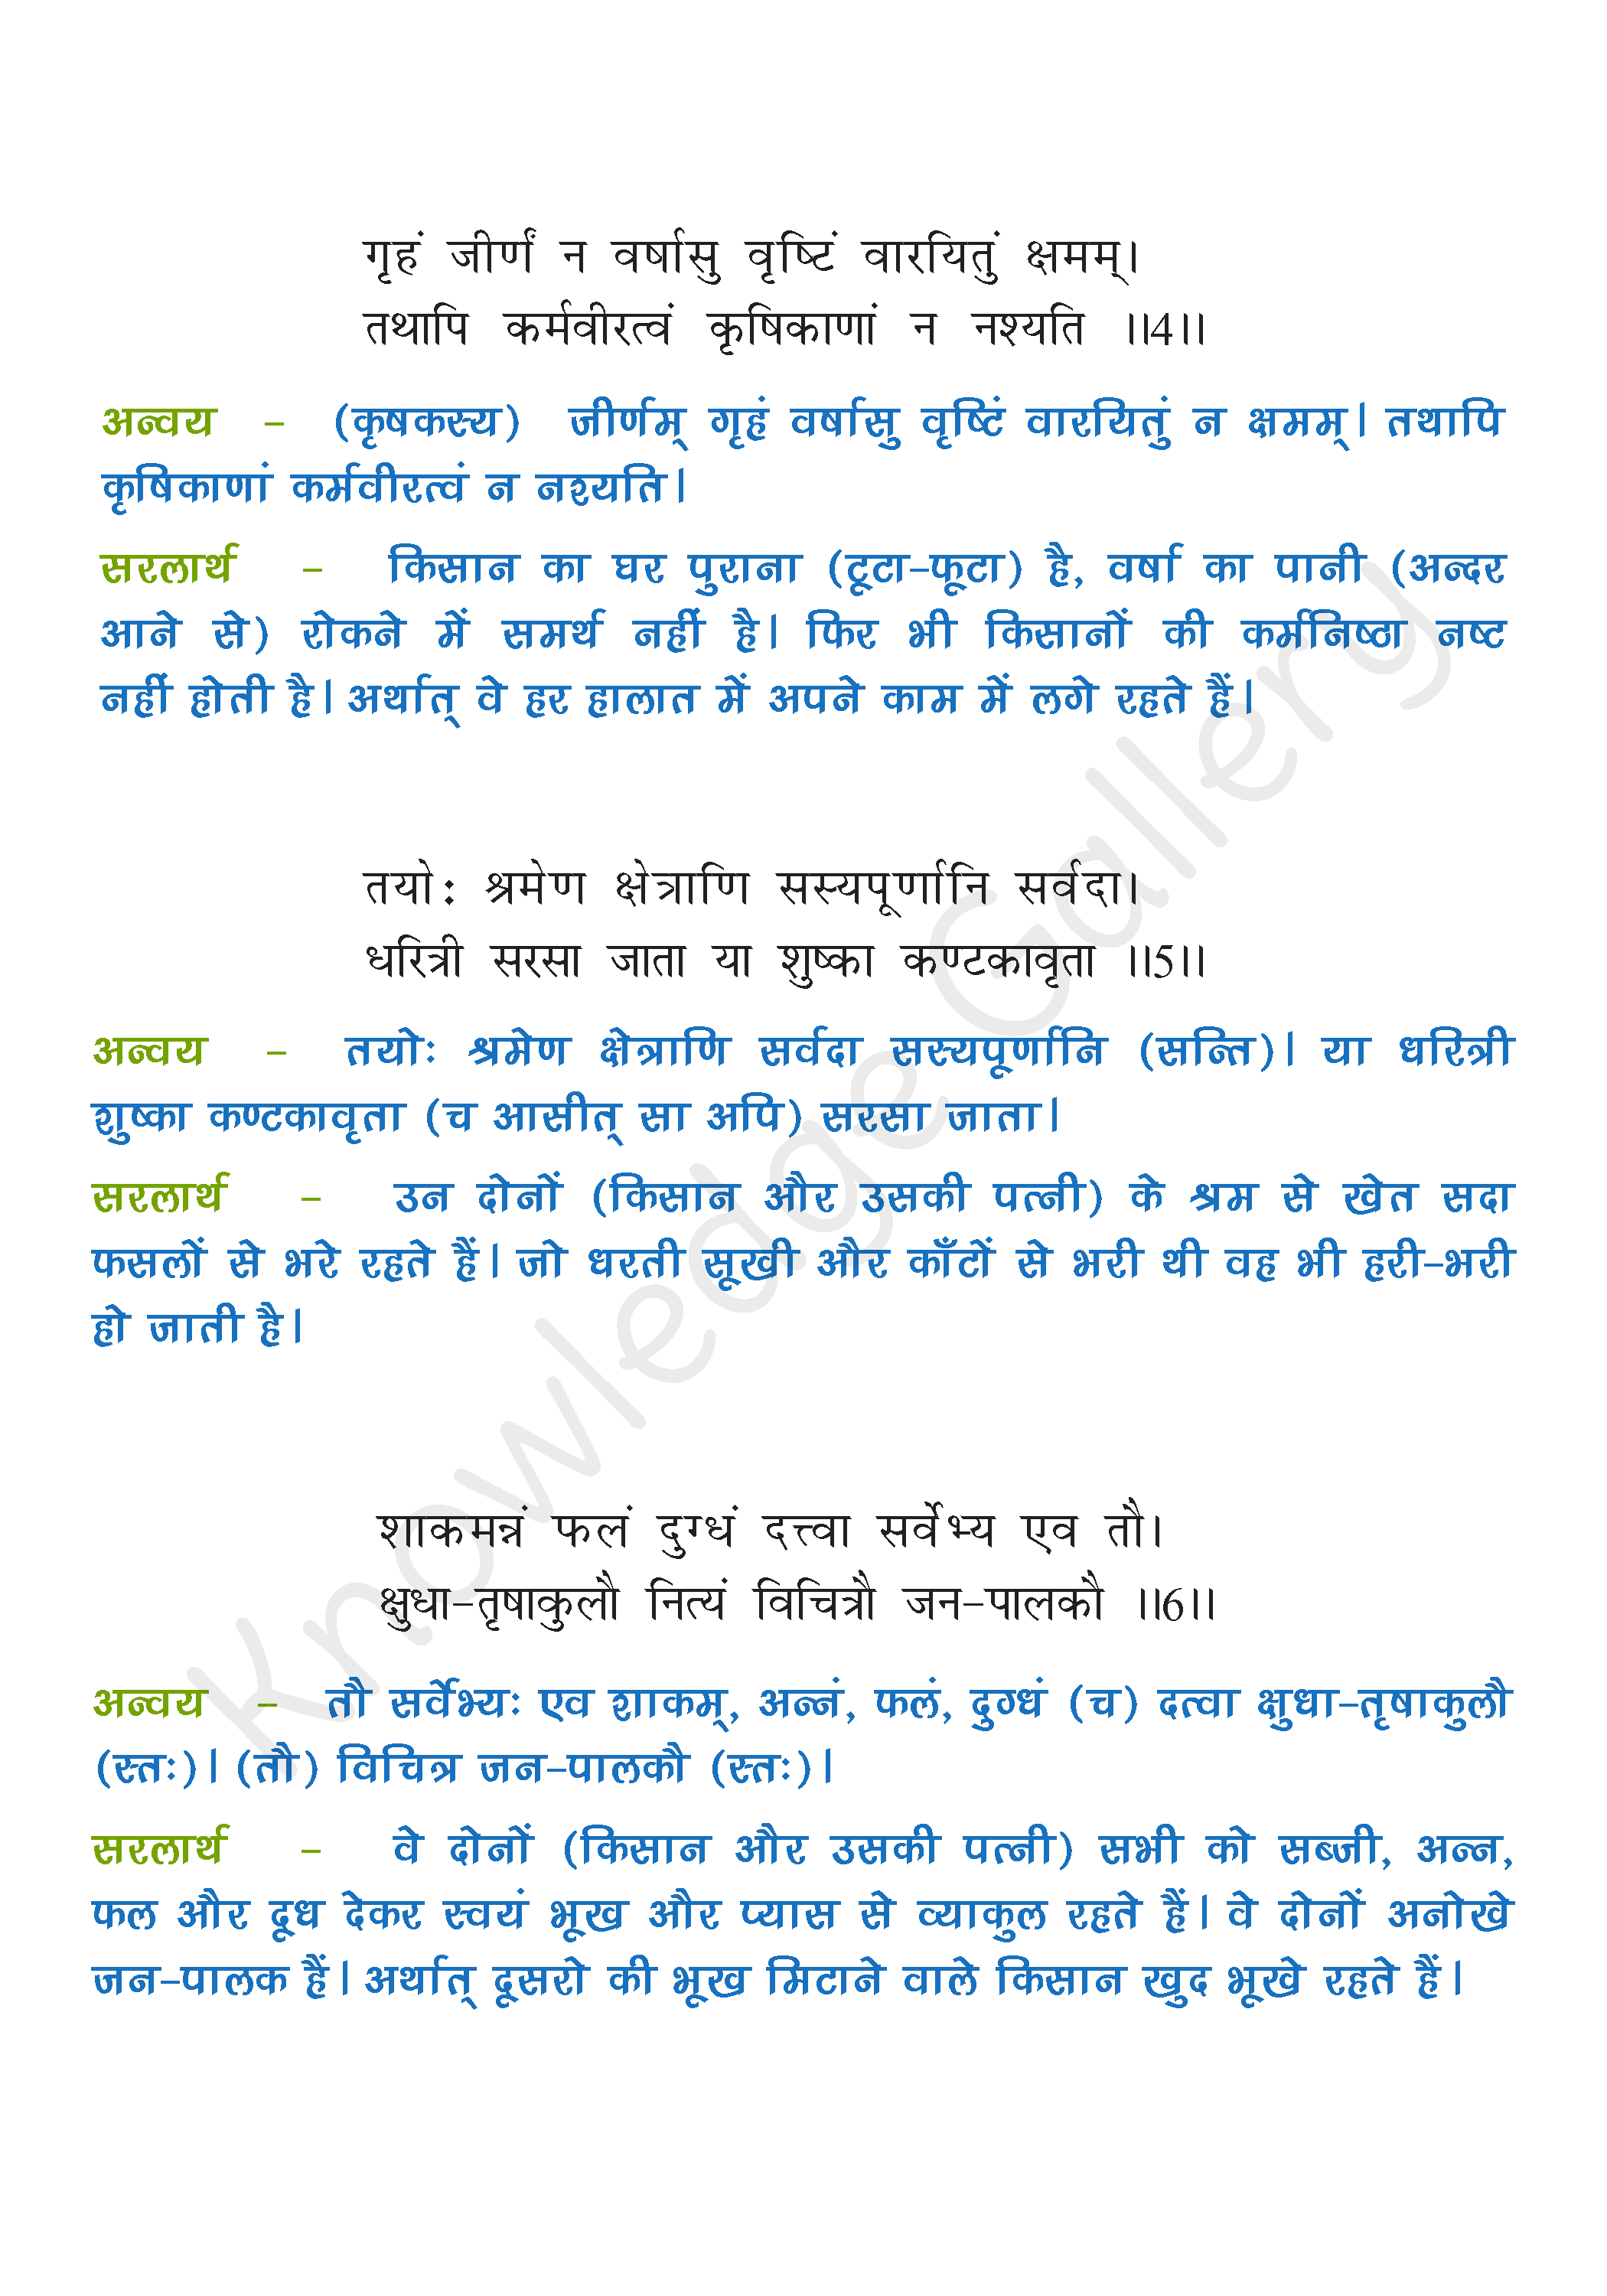 NCERT Solution For Class 6 Sanskrit Chapter 10 part 2